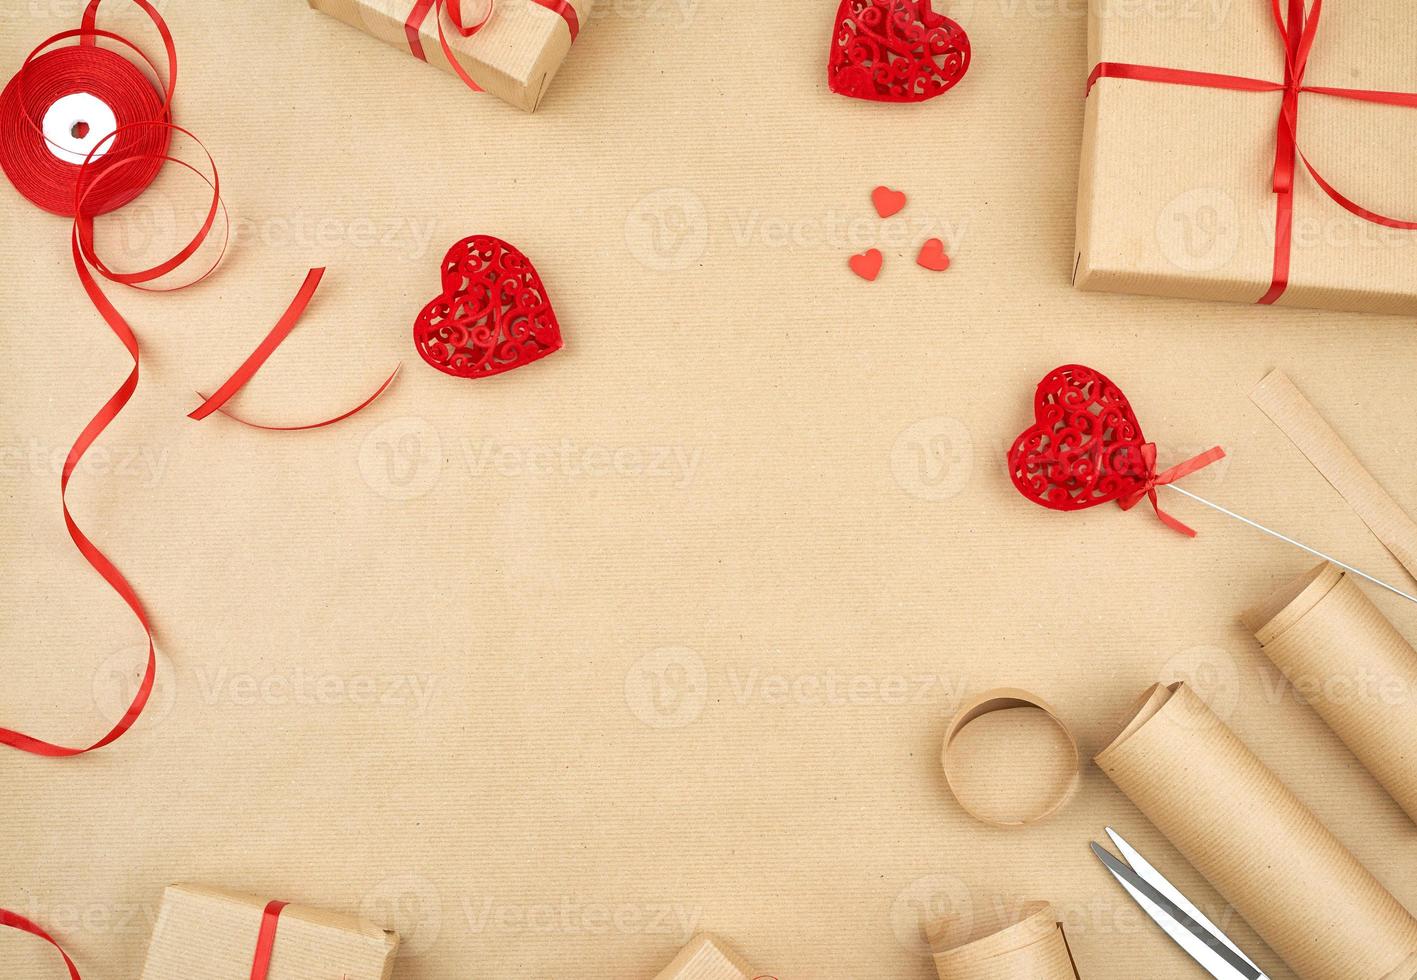 papel kraft marrón, bolsas de regalo empaquetadas y atadas con una cinta roja, corazón rojo foto